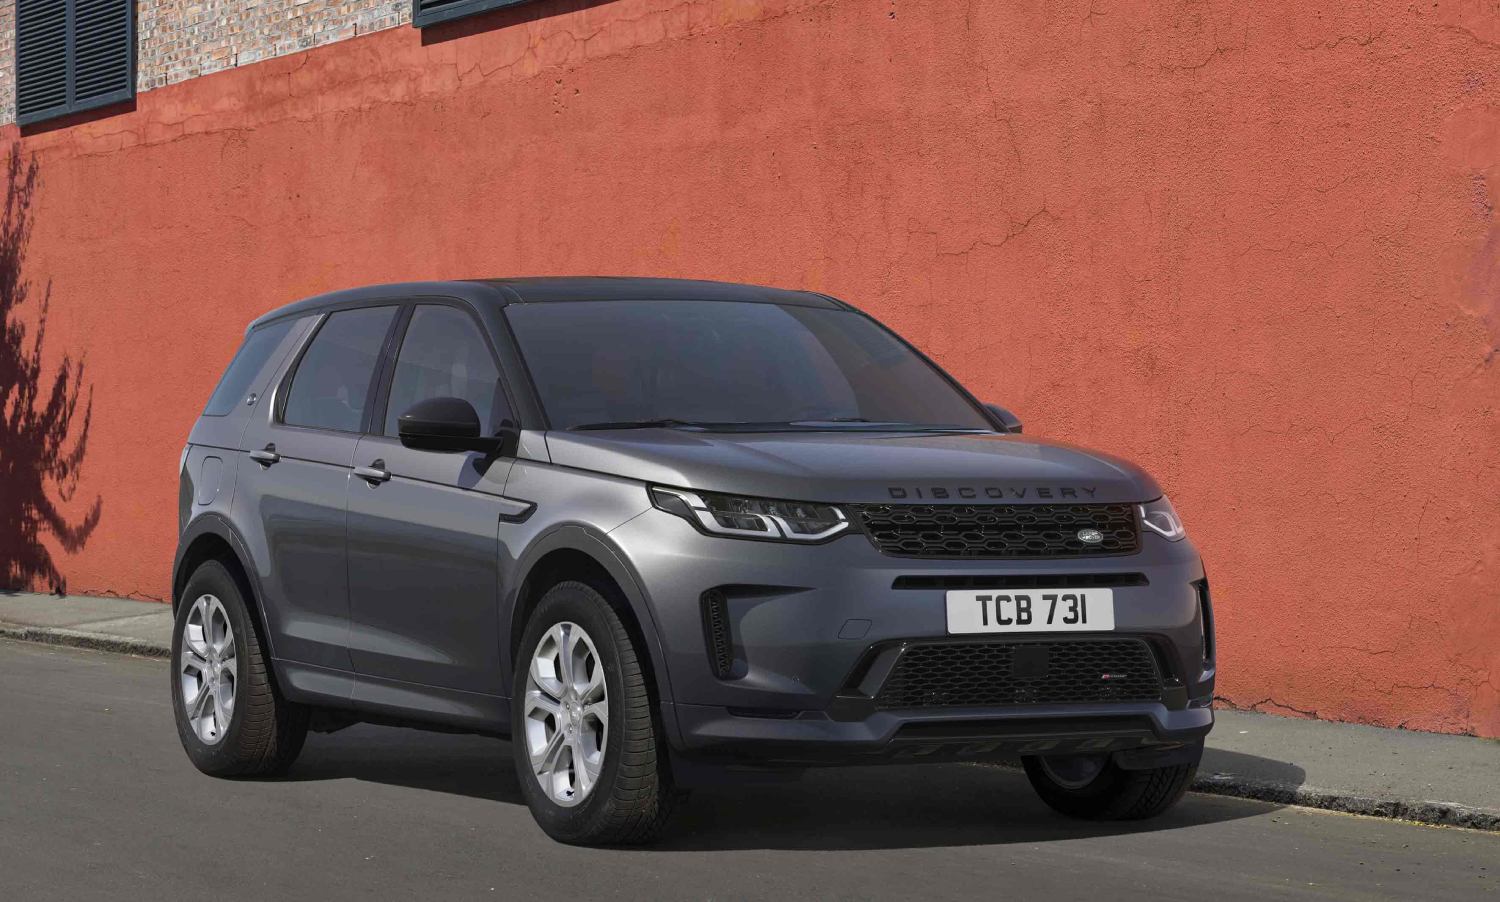 Nuevo Land Rover Discovery Sport, un SUV caracterizado por su diseño y versatilidad